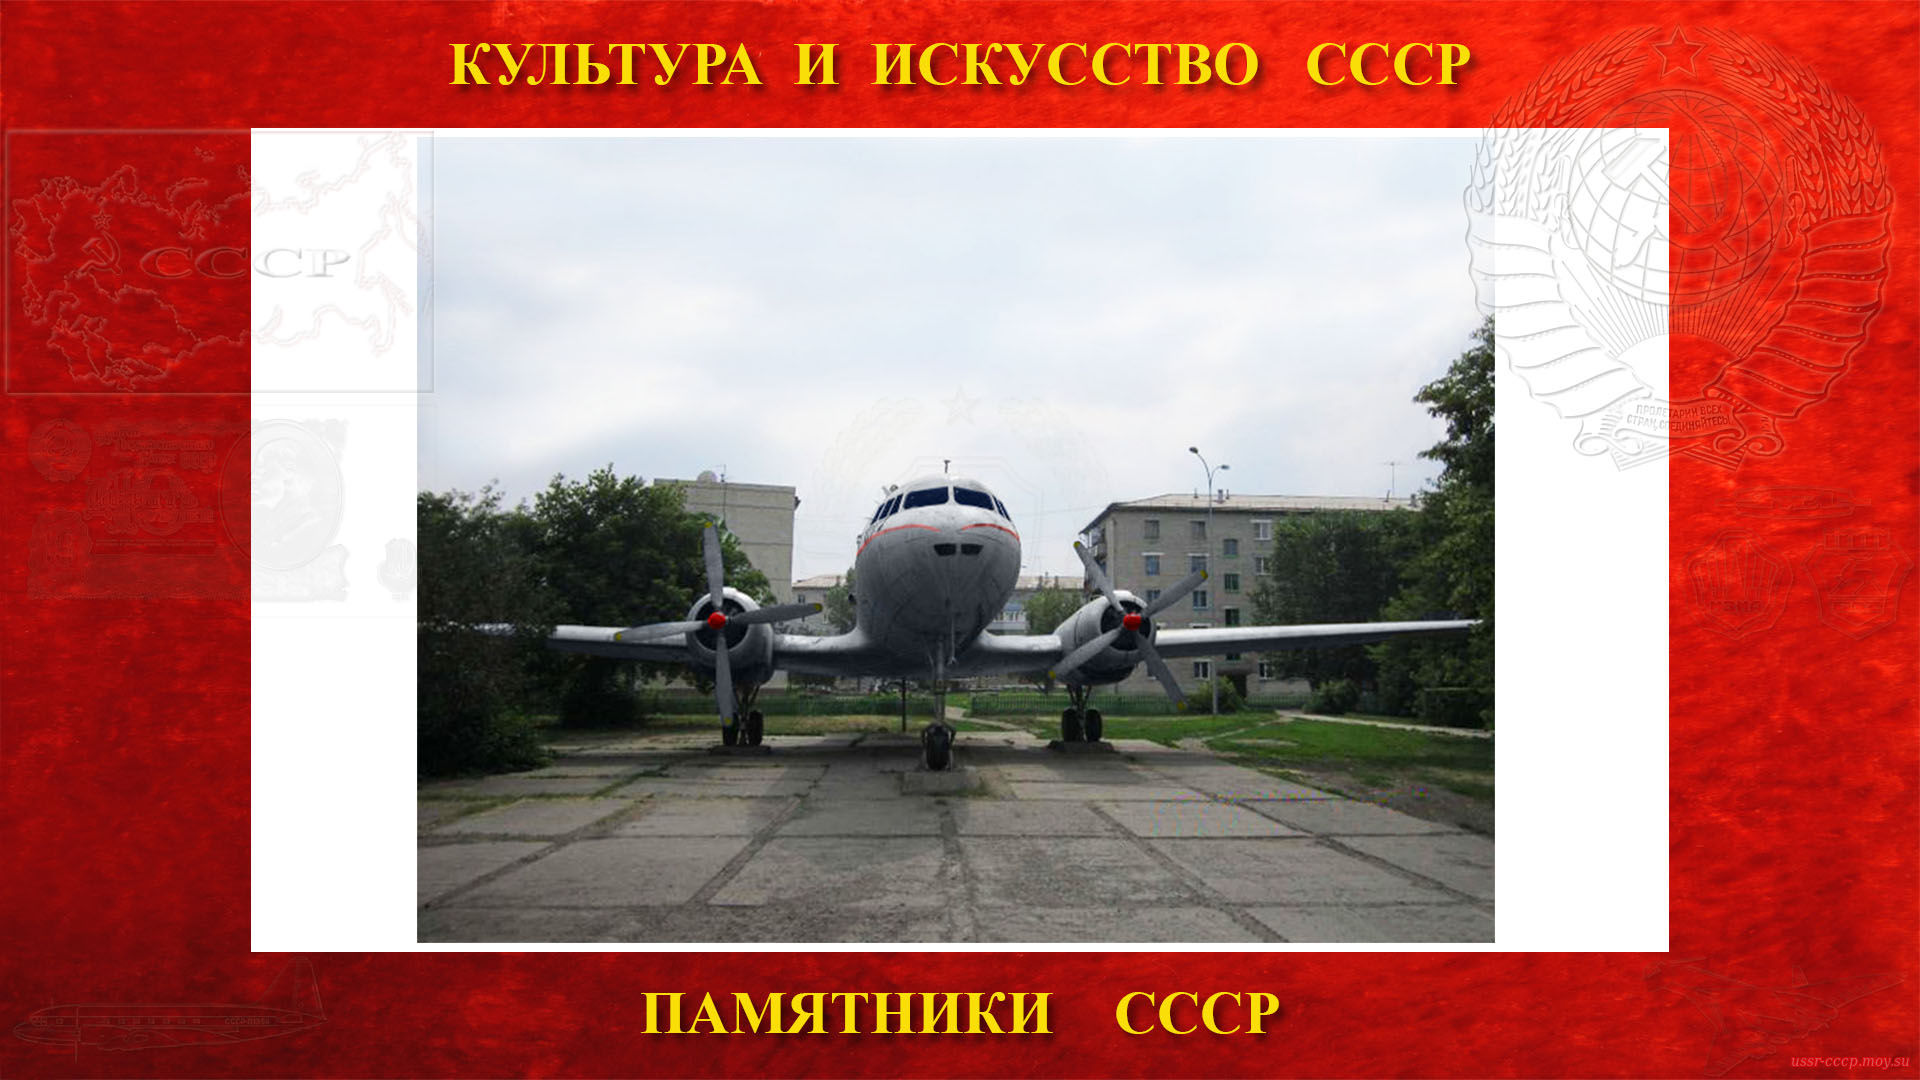 Памятник — Самолёт Ил-14 (Куйбышев) (повествование)